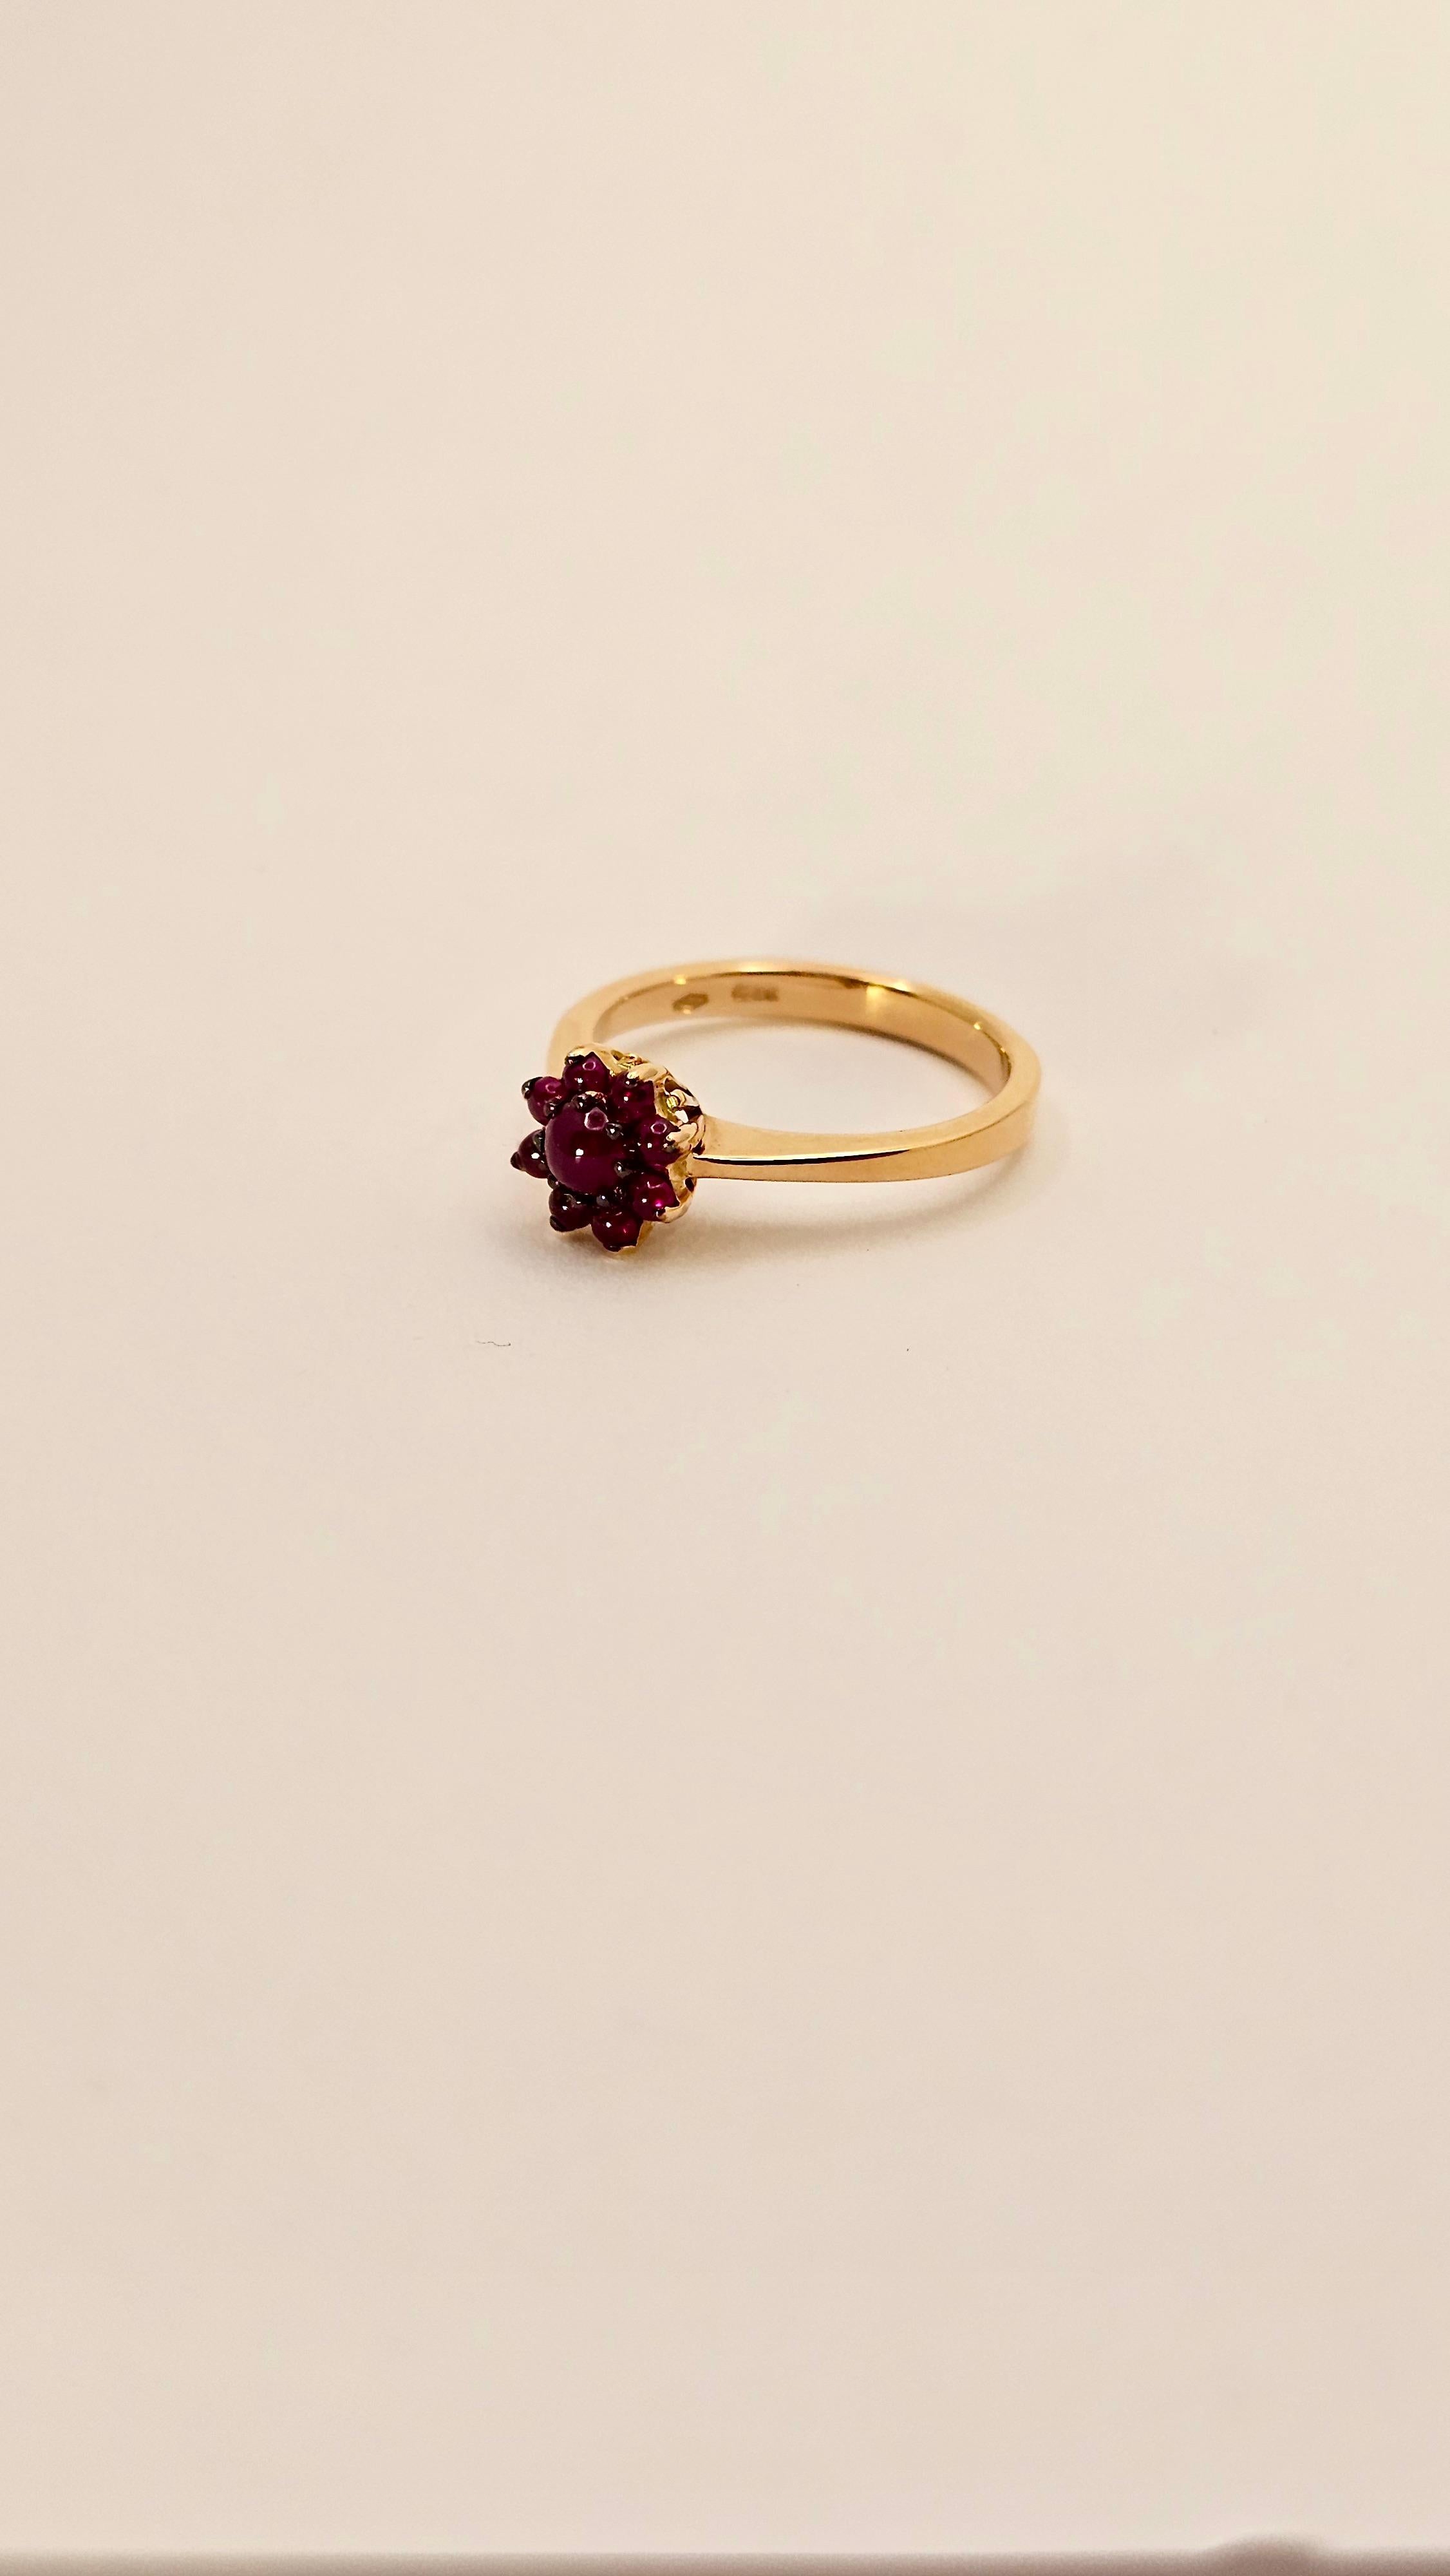 Un delizioso anello in oro rosa 18 Kt e Rubini taglio Cabochon del peso di 0.78 carati.
Questo anello è realizzato interamente a mano. Ha un caratteristico design in stile anni '60. 
Il motivo a fiore è composto da 9 Rubini di colore rosso intenso,